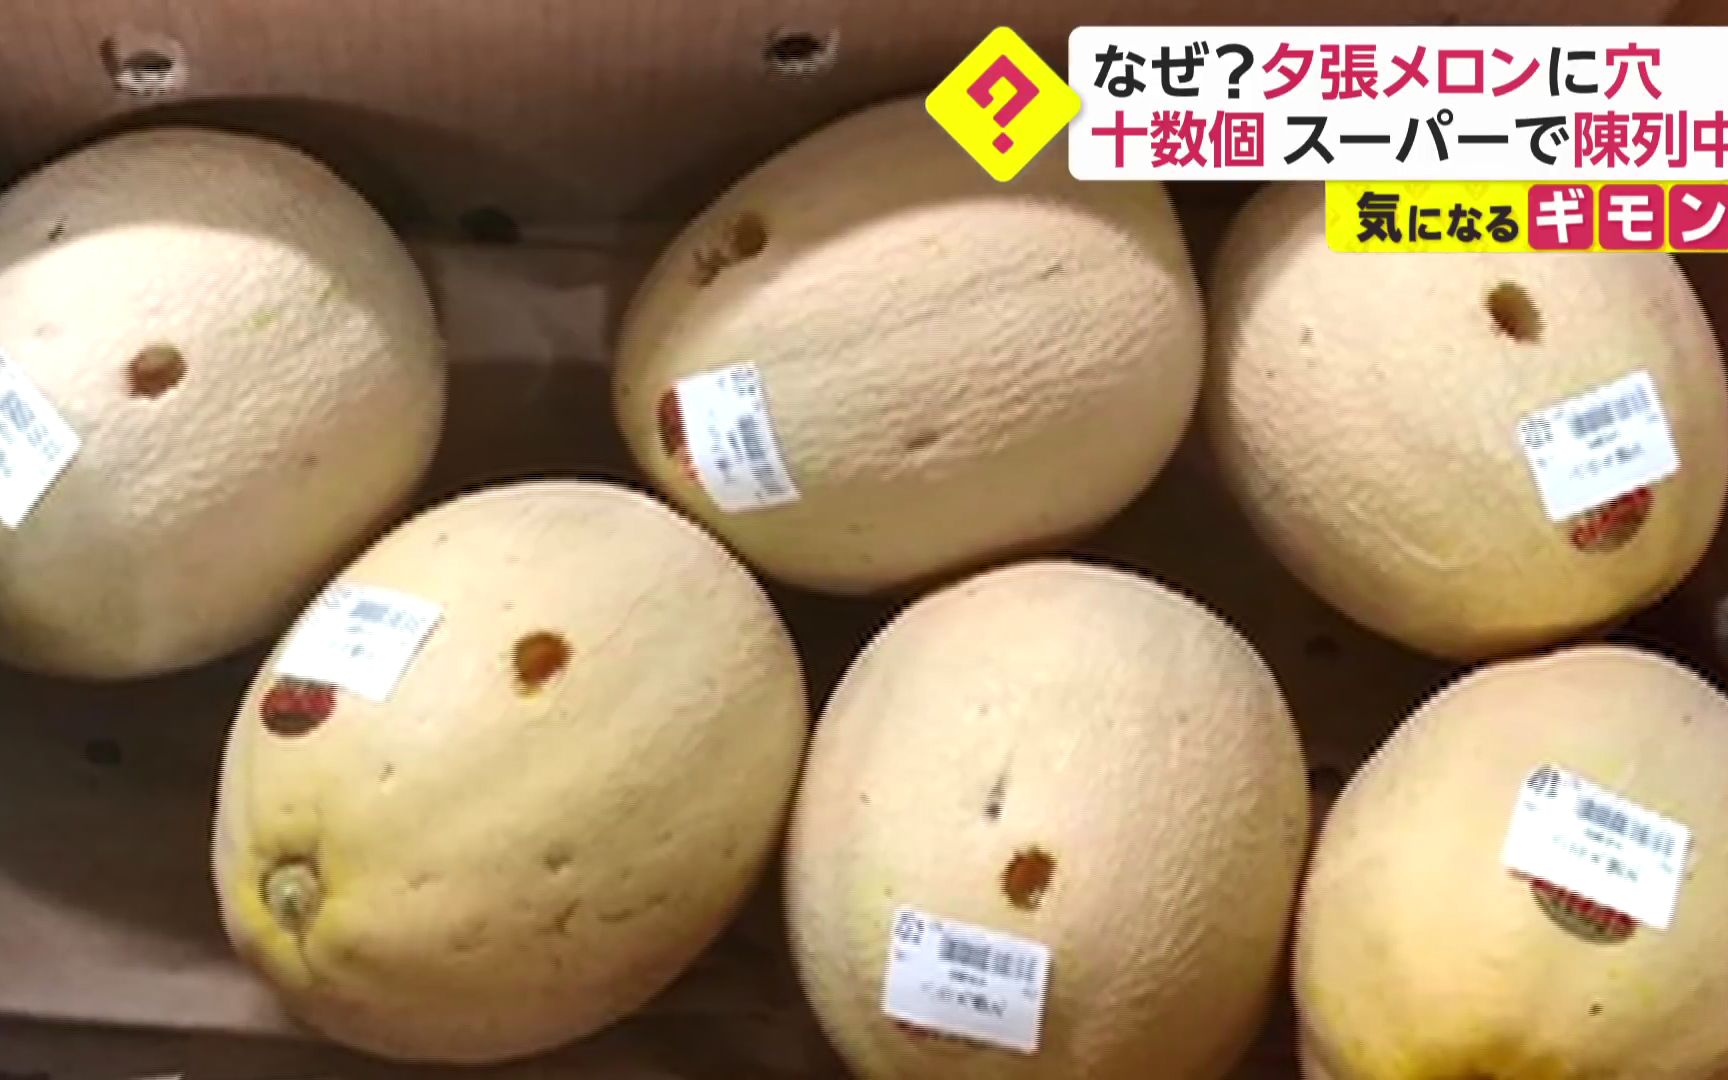 该如何说：北海道超市内数十个夕张蜜瓜出现不明孔洞，损失额高达一万余日元(中日双语)(20/11/20)[1次更新]的第1张示图